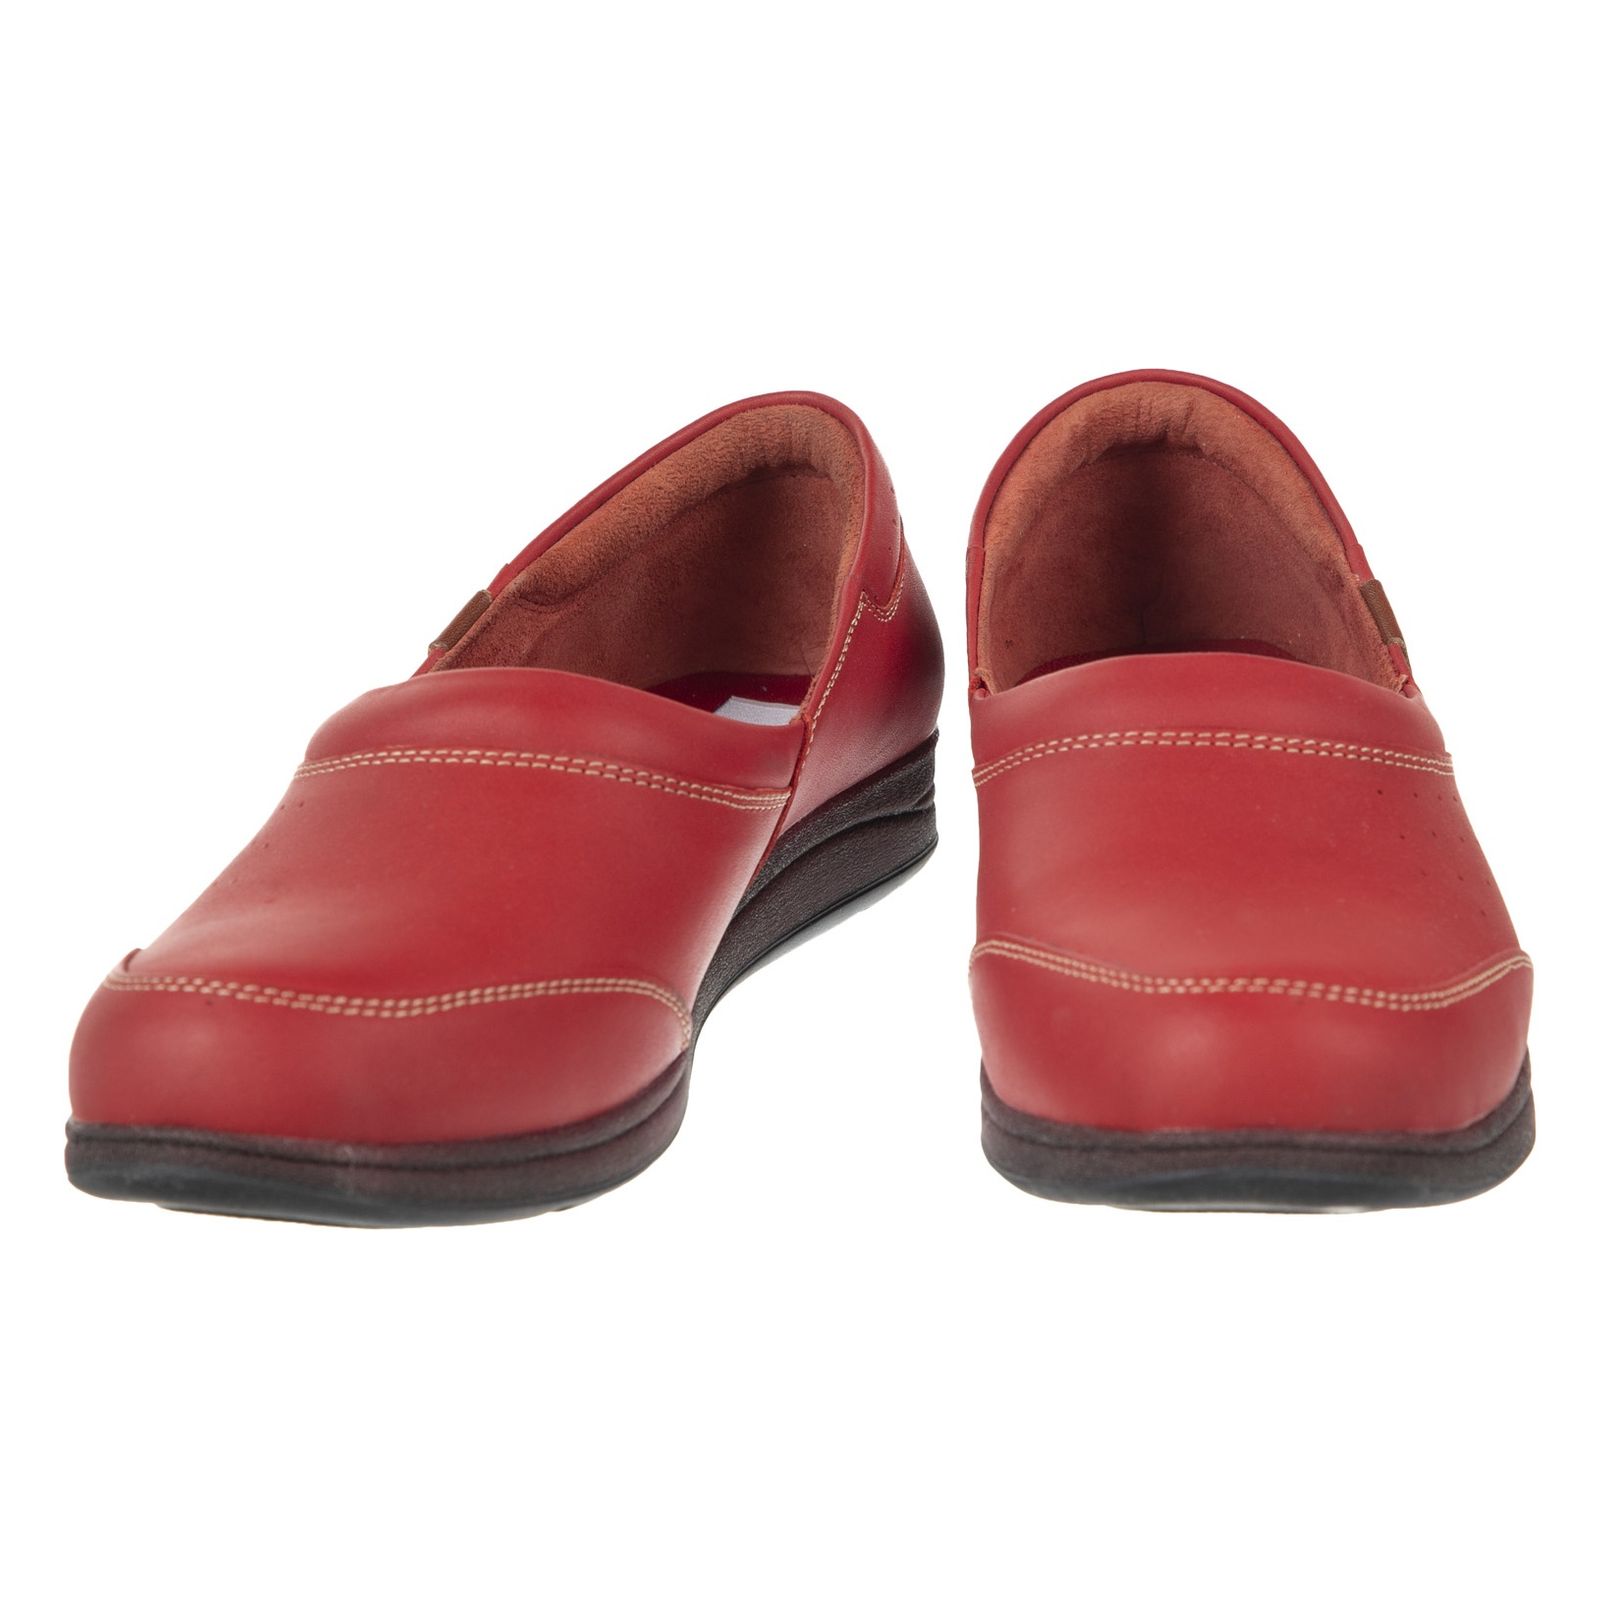 کفش روزمره زنانه ریمکس مدل 5181B500-102 - قرمز - 6